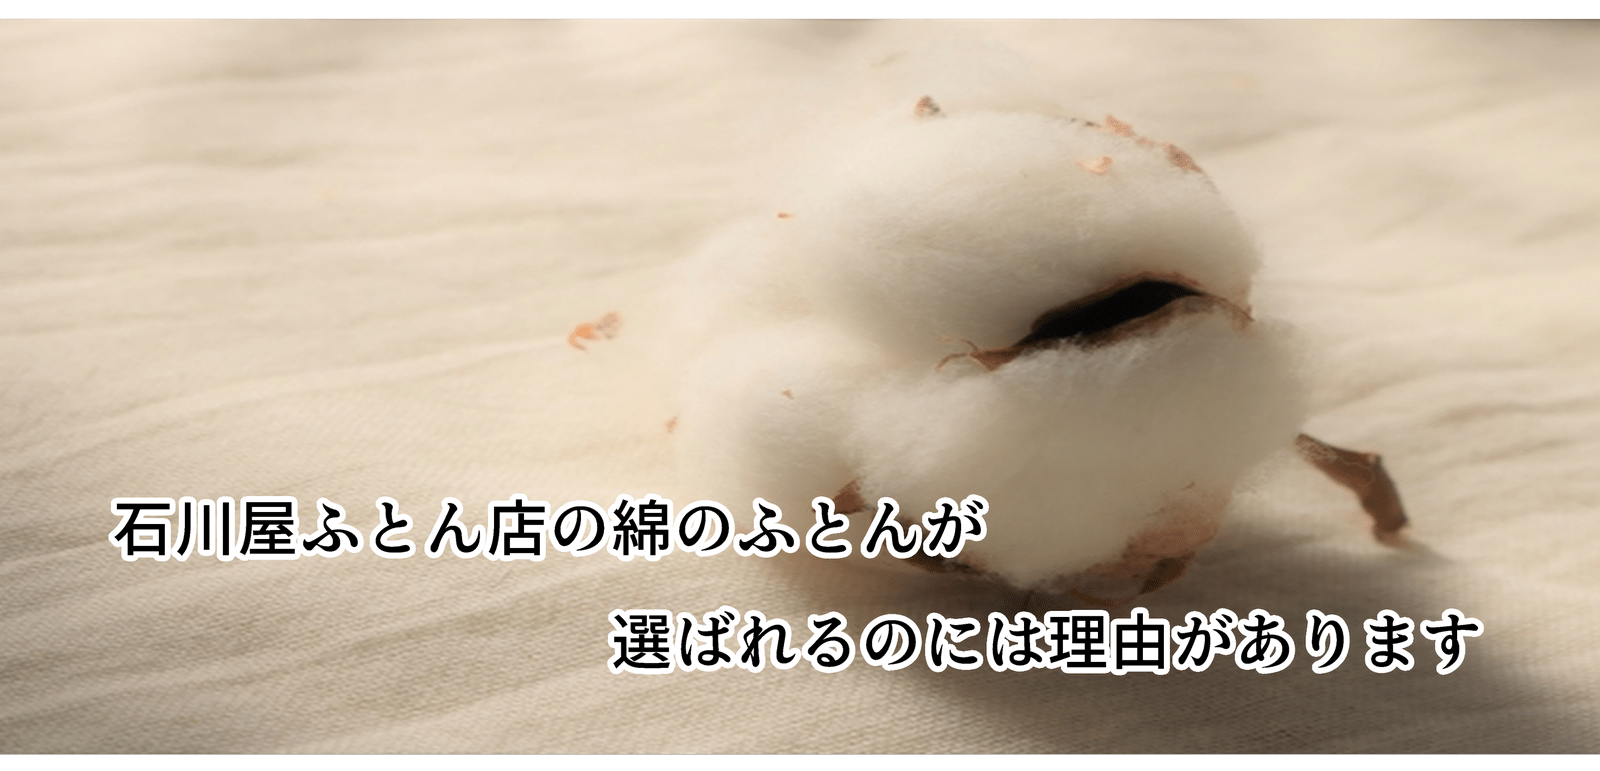 石川屋ふとん店の綿のふとんが選ばれるのには理由があります。